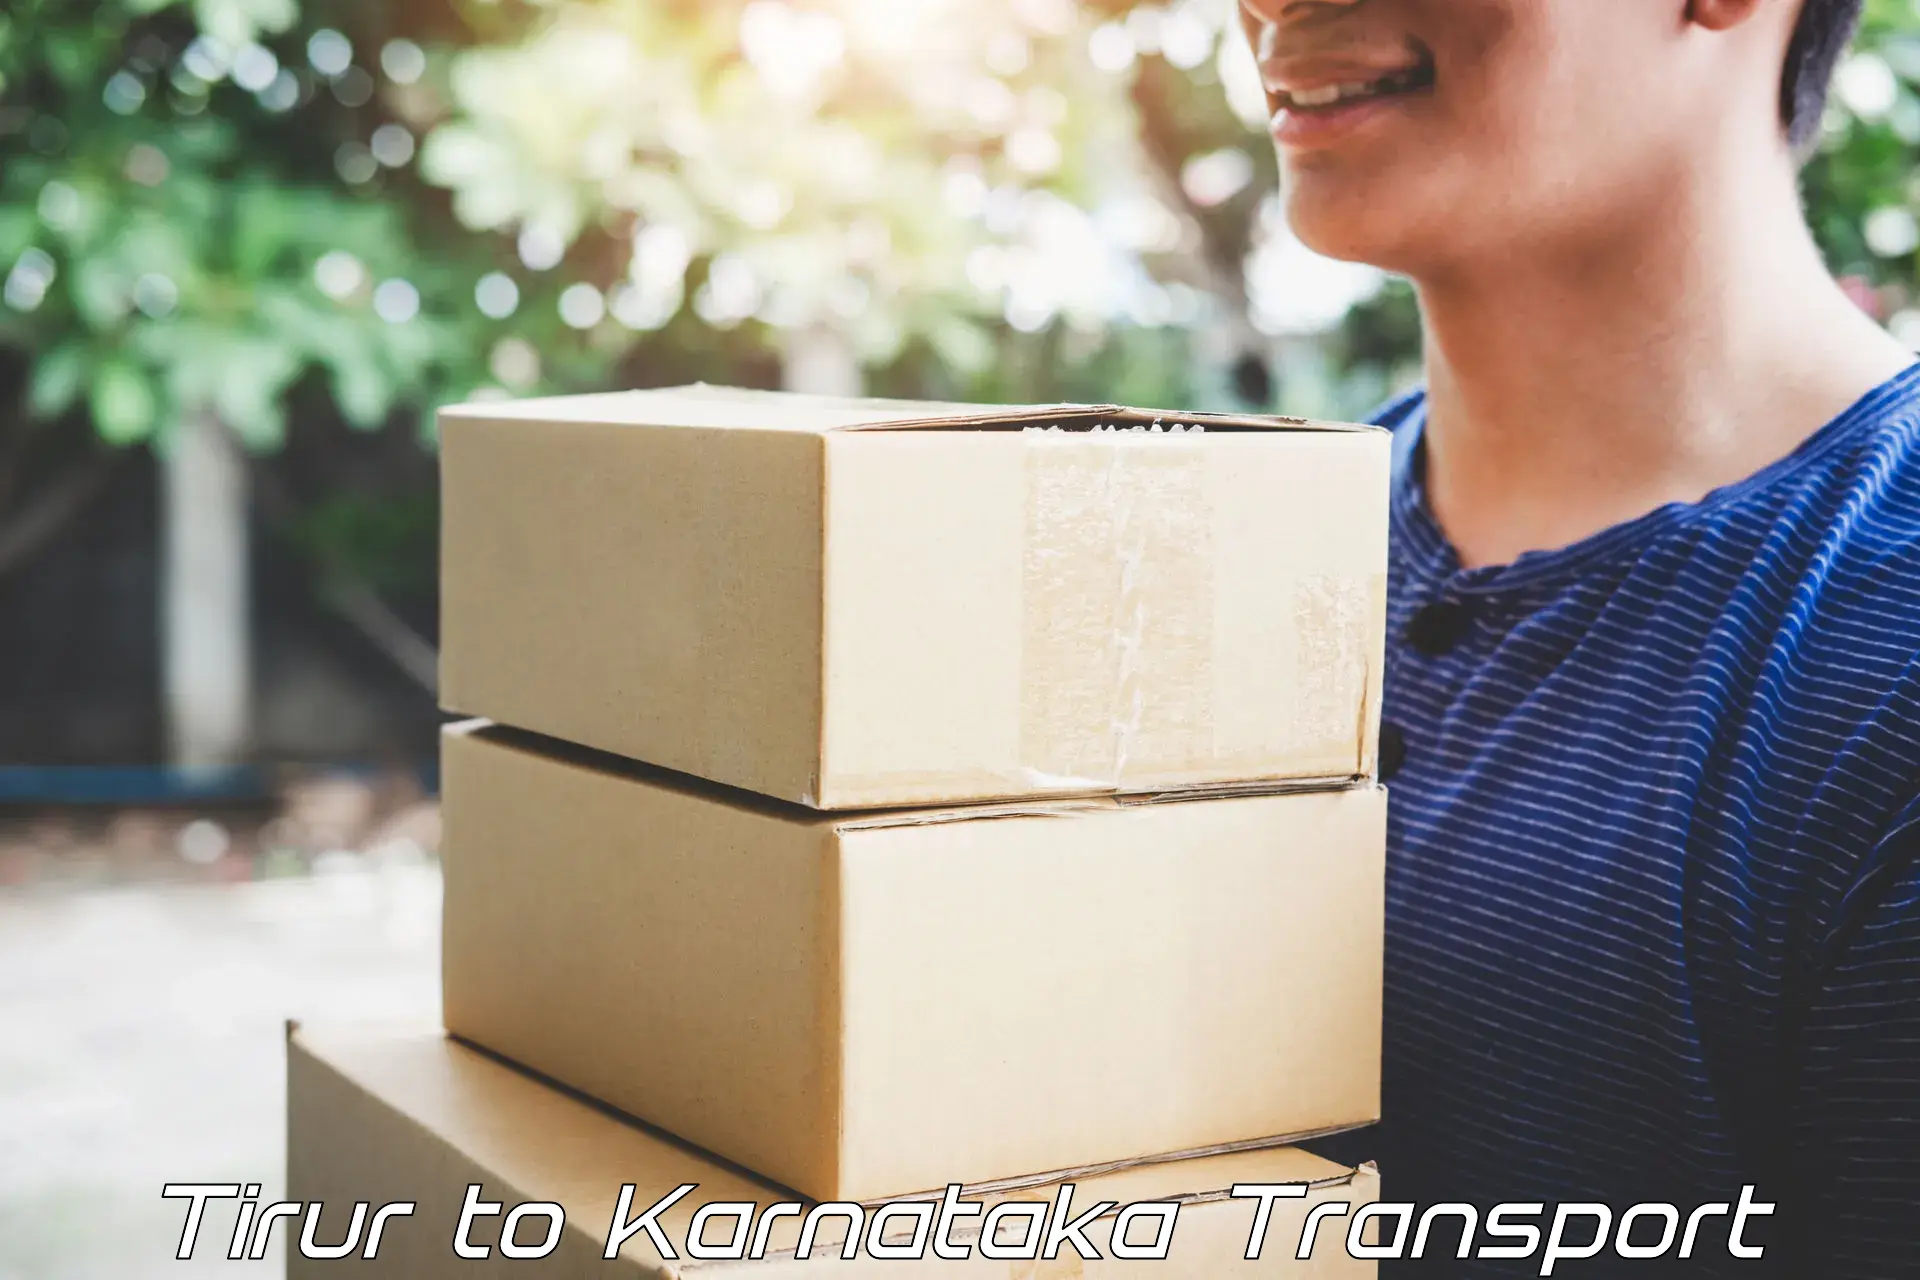 Shipping services Tirur to Karnataka